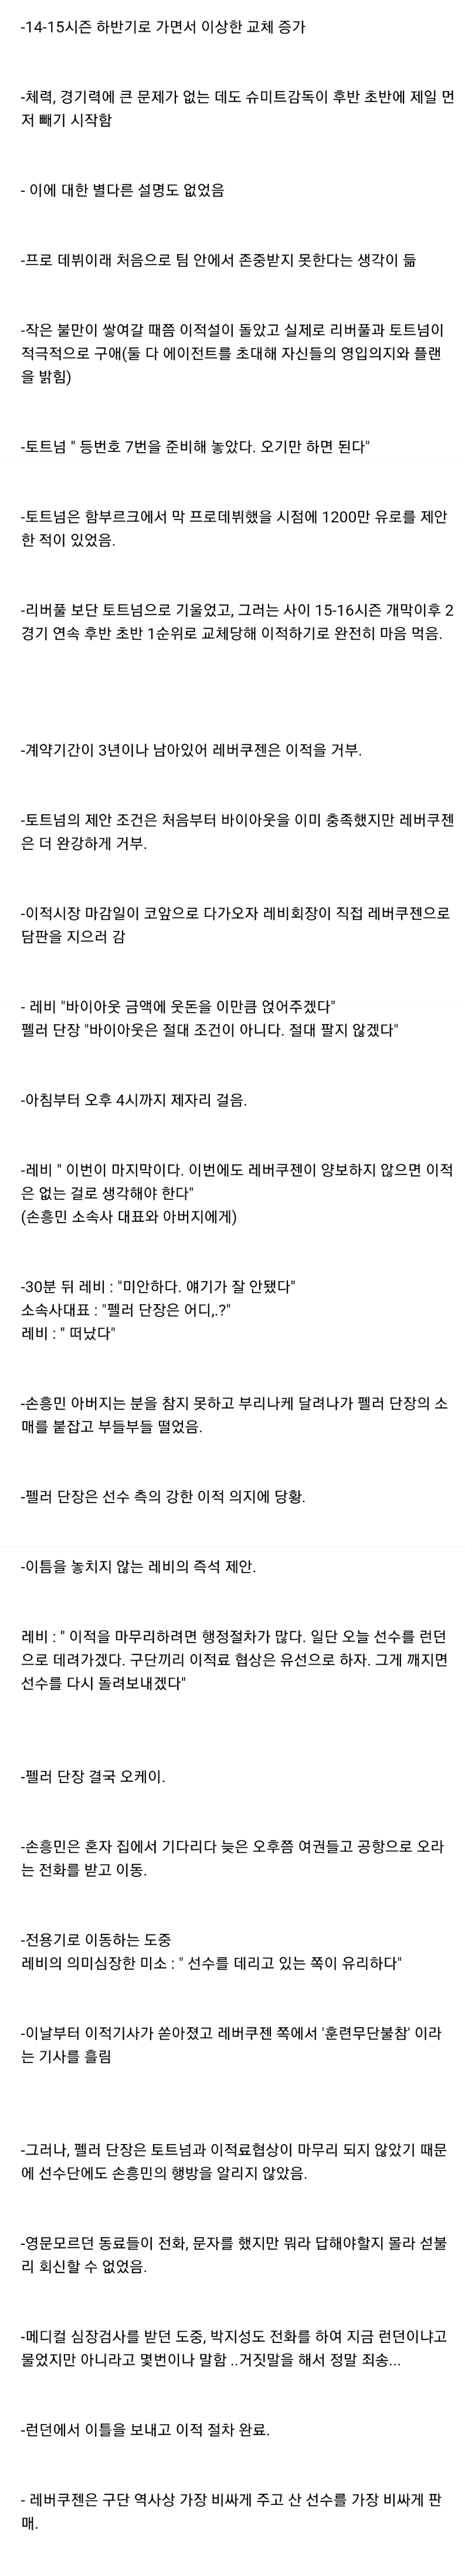 손흥민의 '레버쿠젠-토트넘' 이적관련 비하인드 (+포체티노 썰)